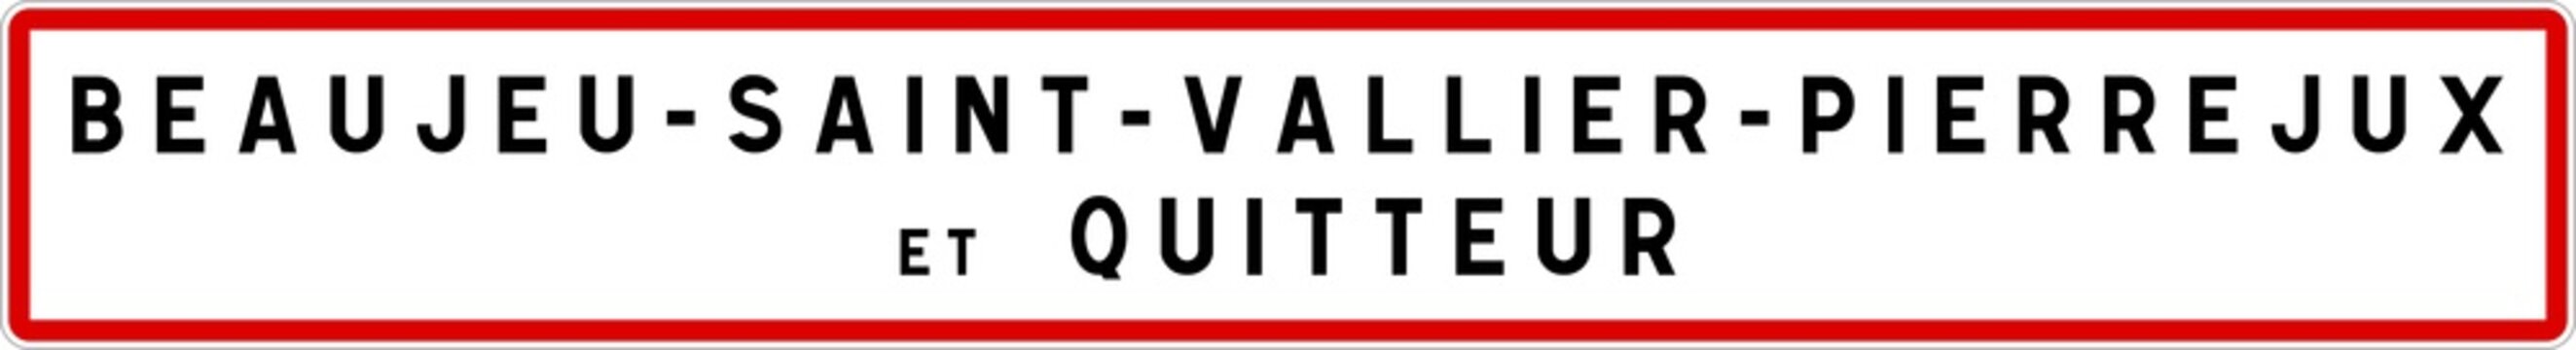 Panneau entrée ville agglomération Beaujeu-Saint-Vallier-Pierrejux-et-Quitteur / Town entrance sign Beaujeu-Saint-Vallier-Pierrejux-et-Quitteur